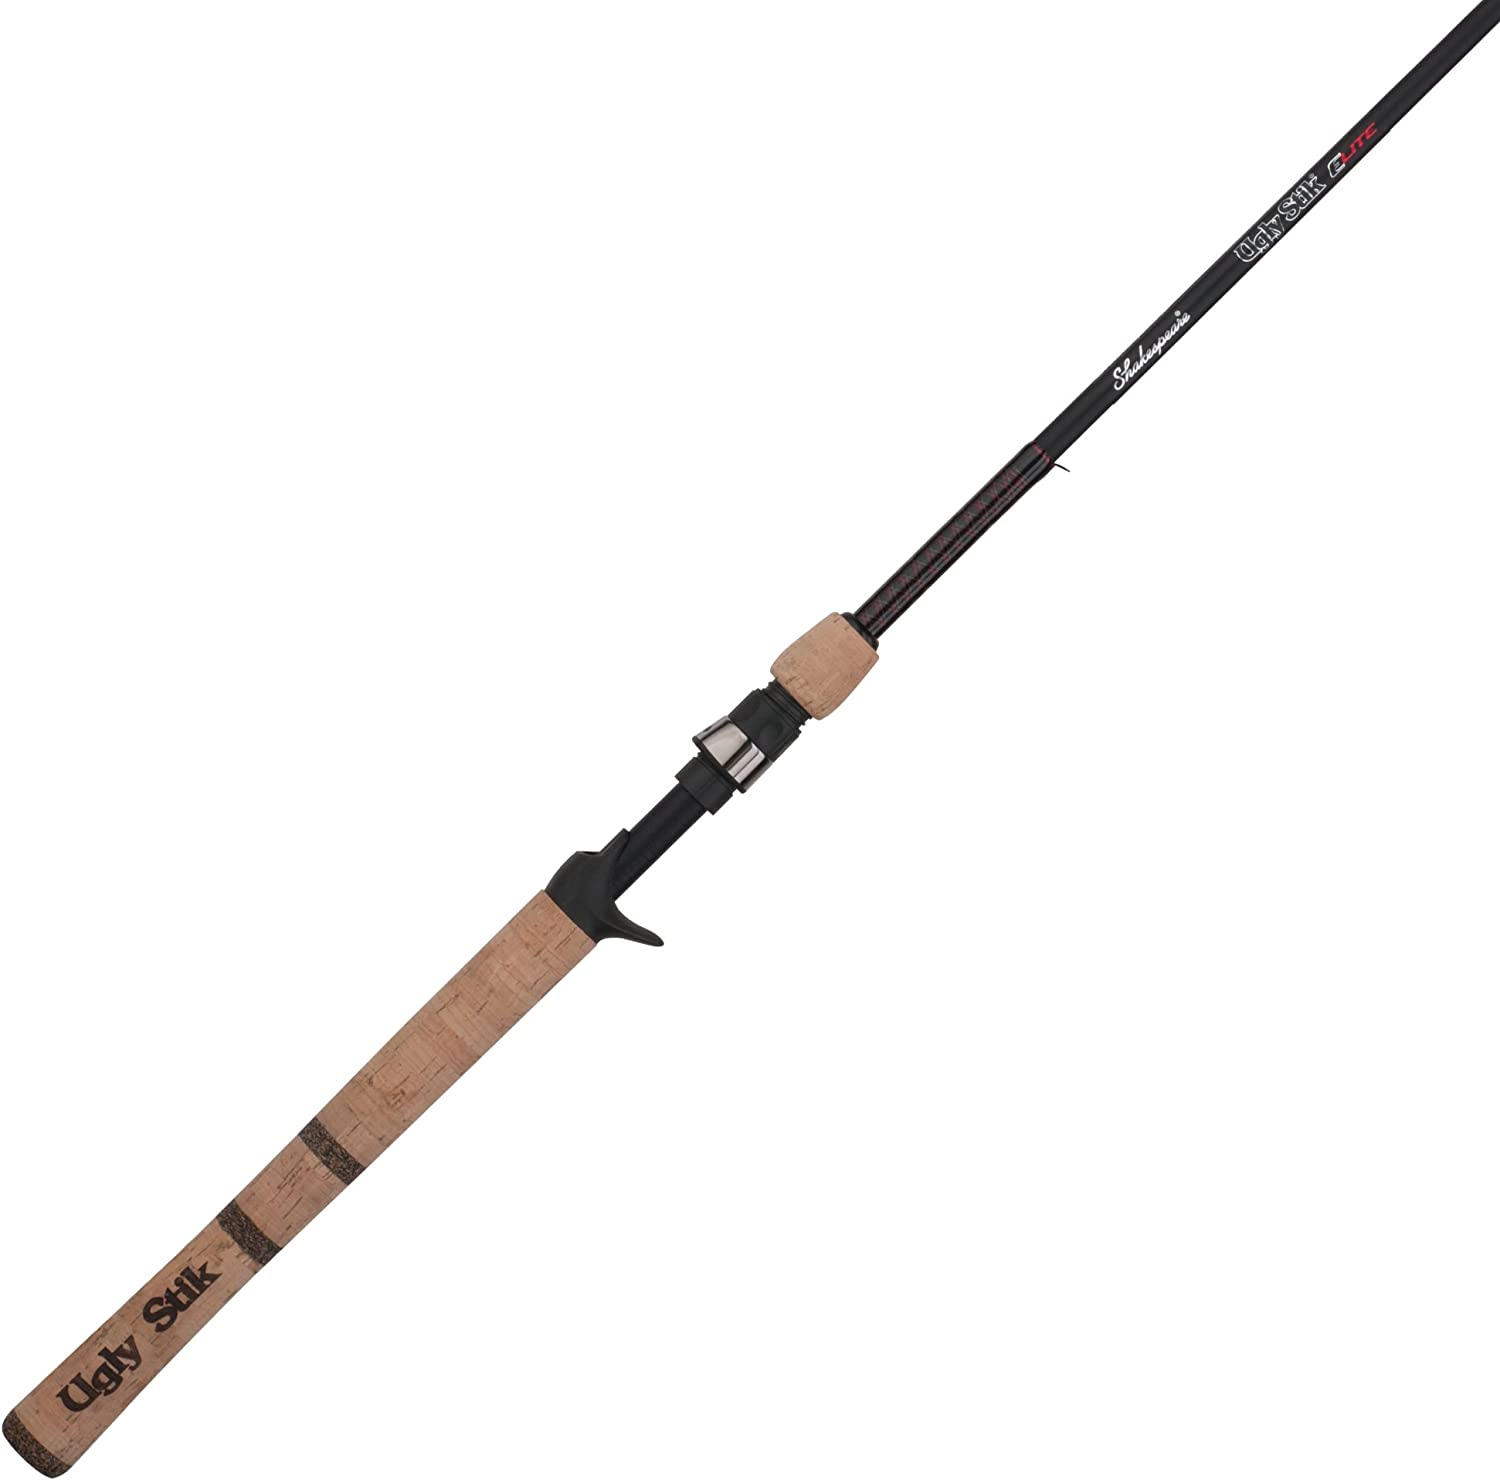 10. Ugly Stik Elite Casting Fishing Rod - Best Baitcasting Rod Under $60